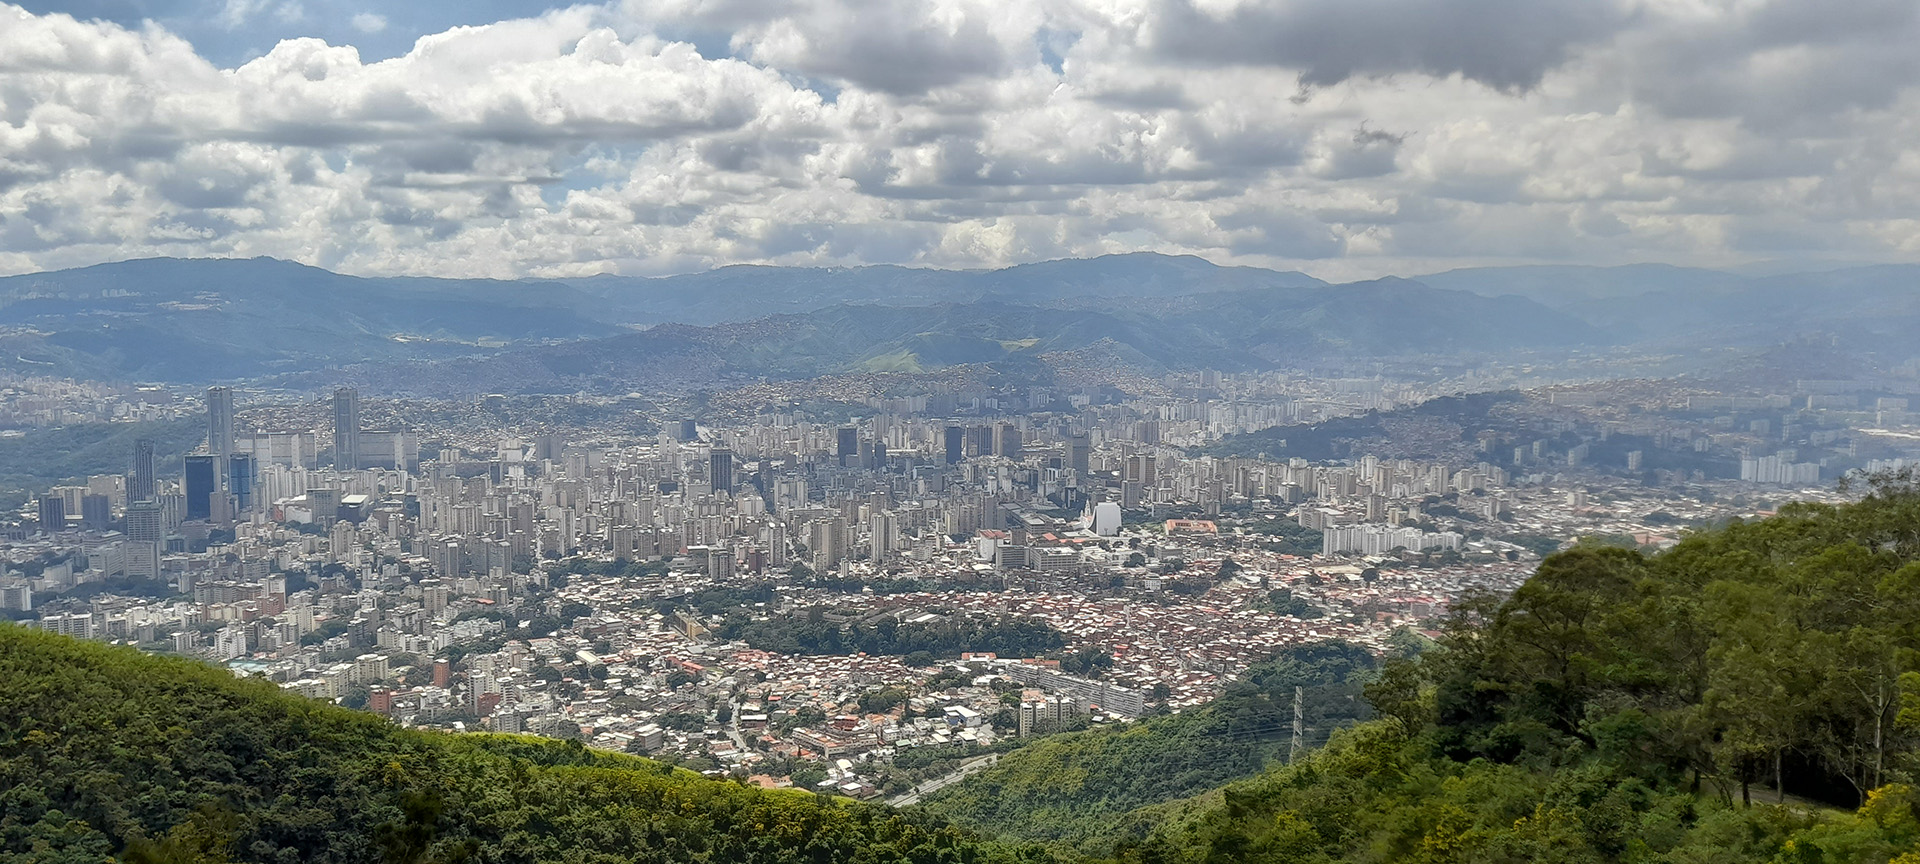 Vista de la ciudad de Caracas desde el cerro El Ávila, que bordea el norte de la capital venezolana.